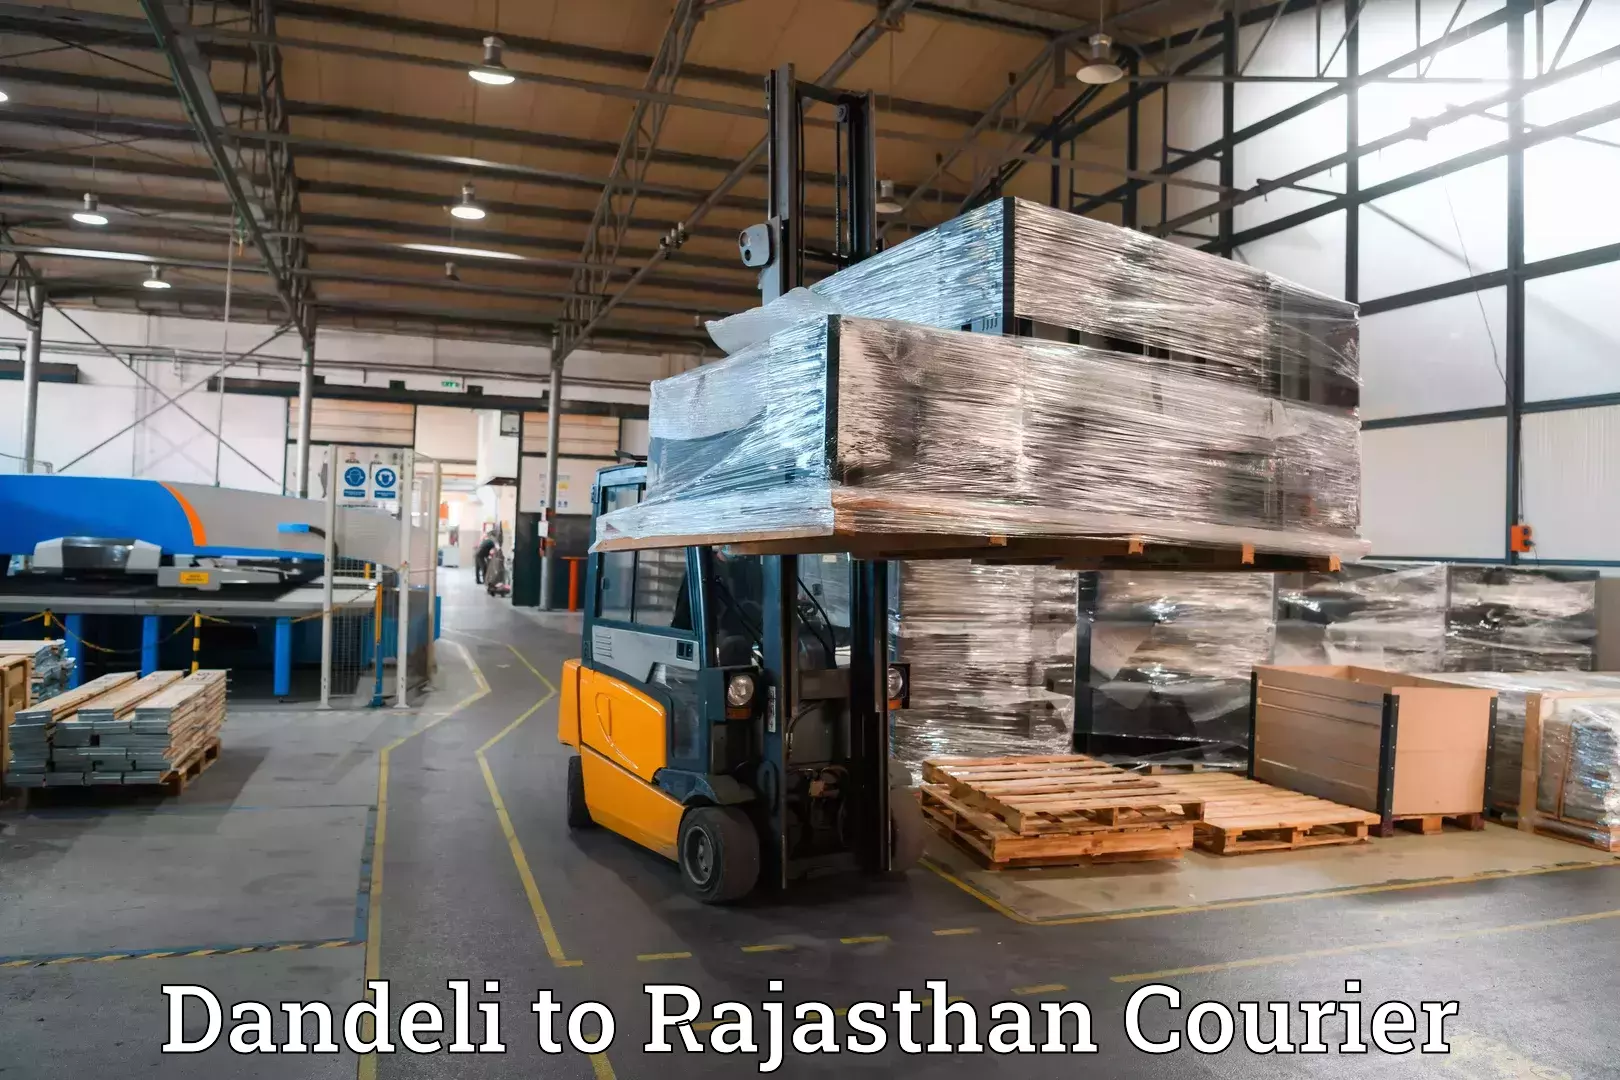 Luggage transit service Dandeli to Rajasthan